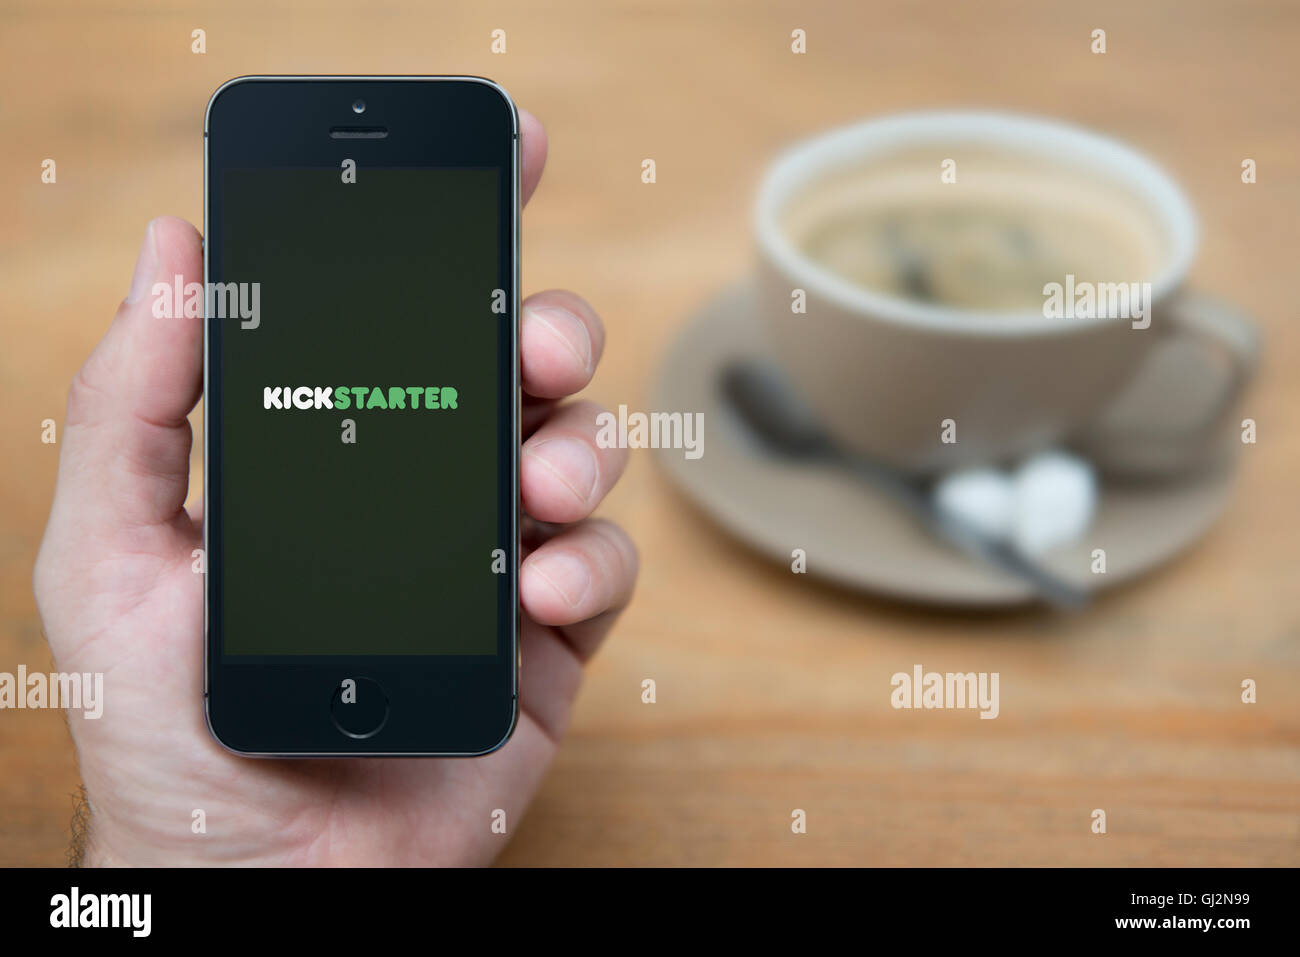 Un uomo guarda al suo iPhone che visualizza il logo Kickstarter, mentre sat con una tazza di caffè (solo uso editoriale). Foto Stock